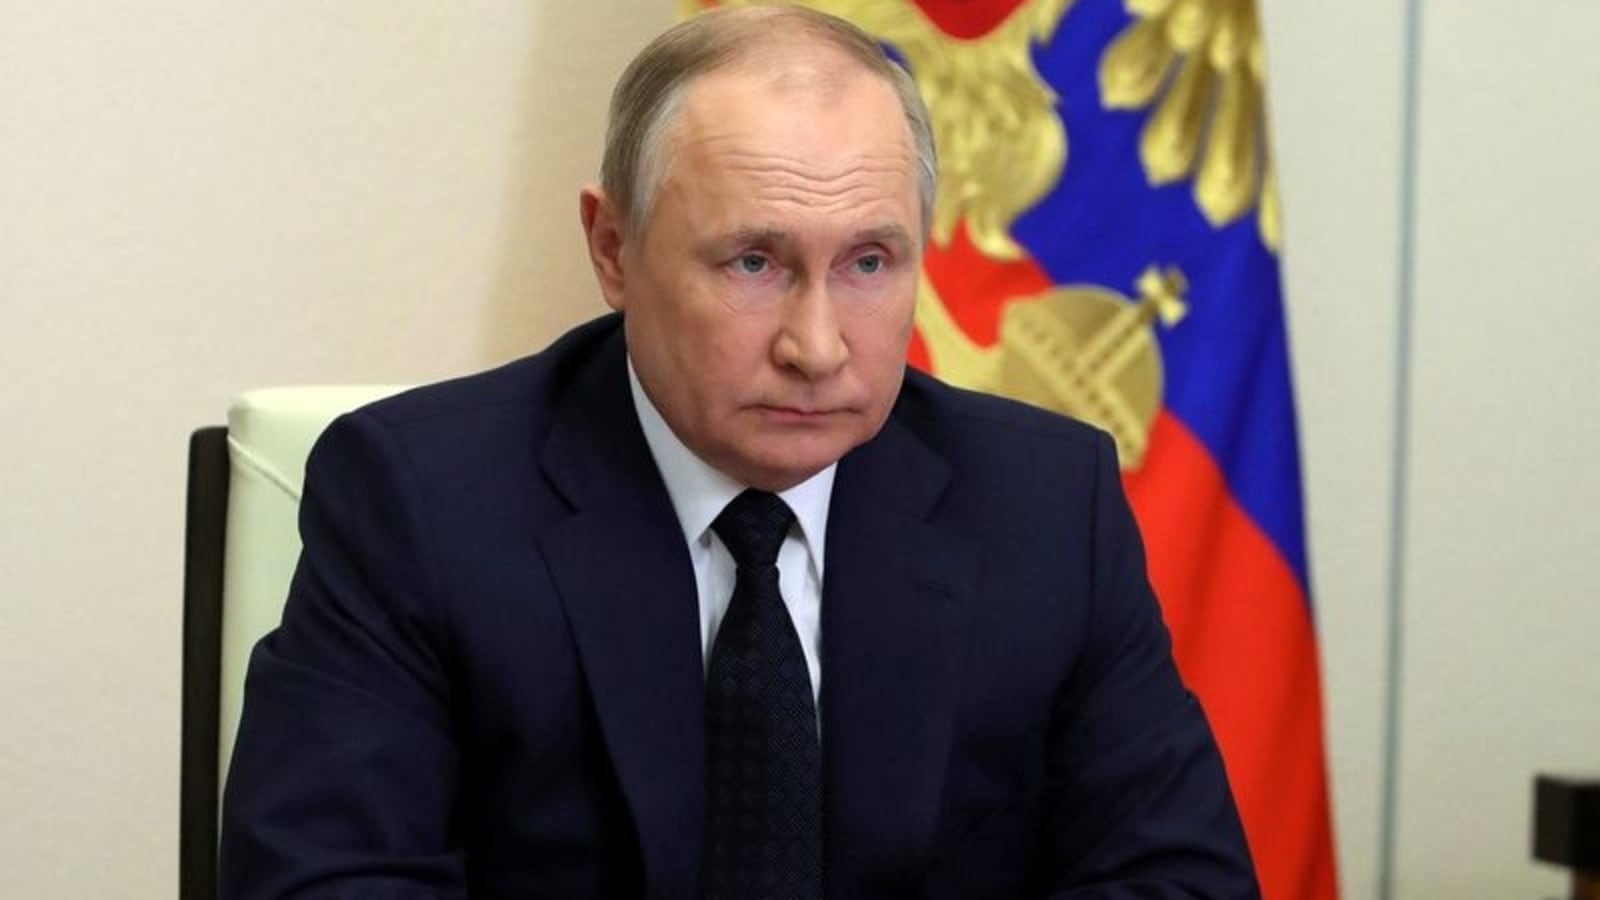 Menteri Pertahanan Rusia terkena serangan jantung setelah berbicara dengan Putin, klaim Ukraina |  Berita Dunia